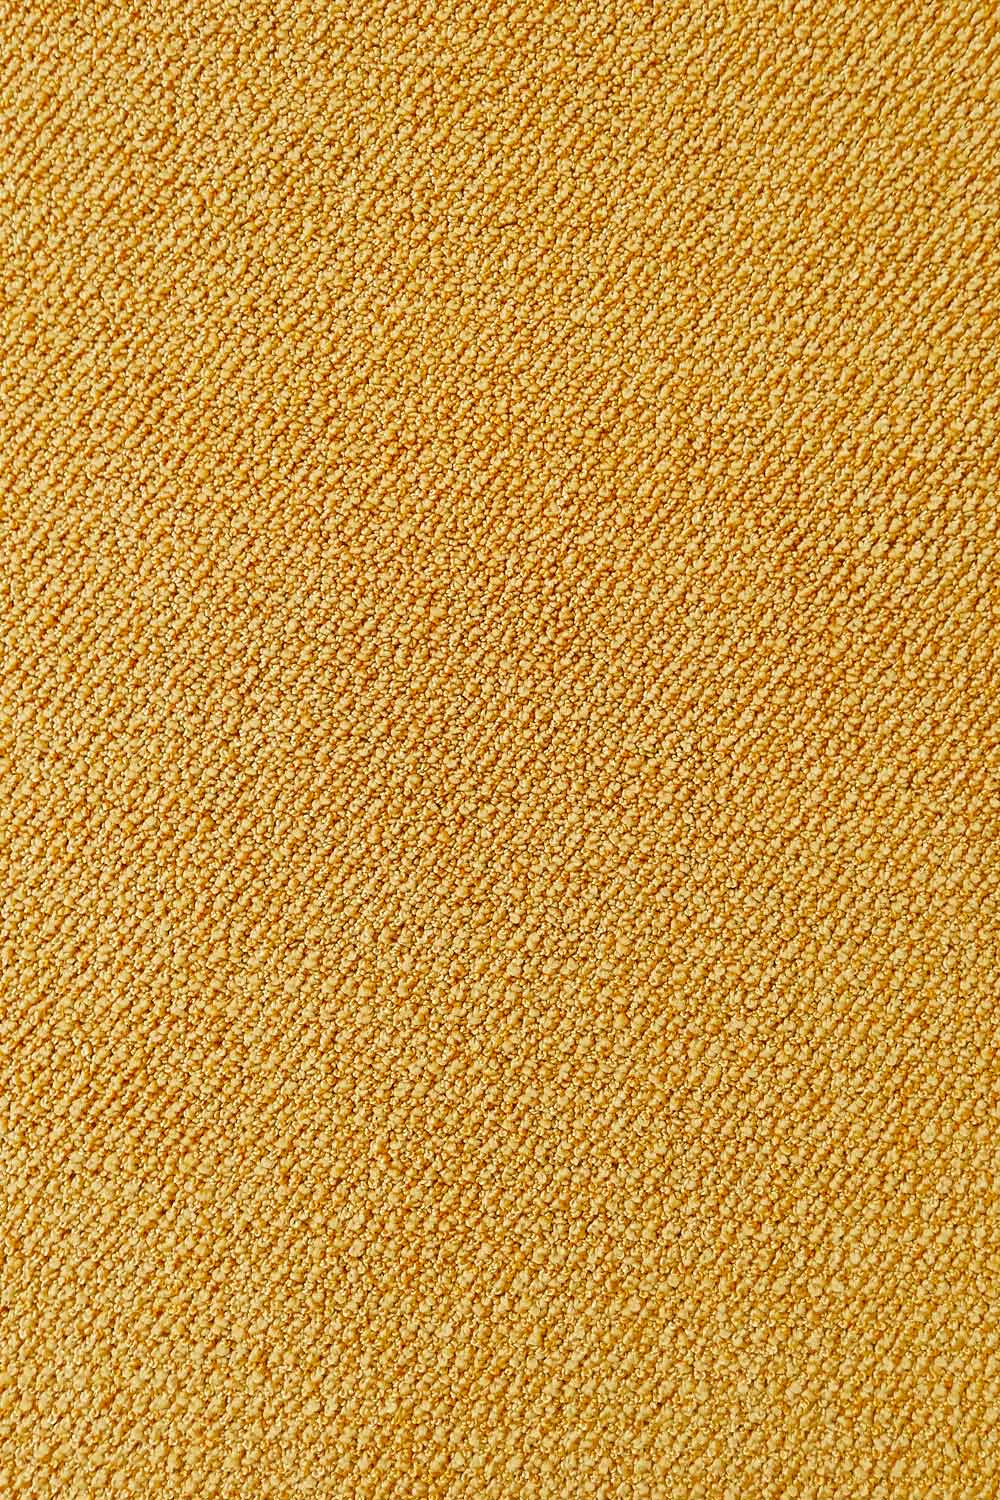 Metrážový koberec Corvino 51 400 cm